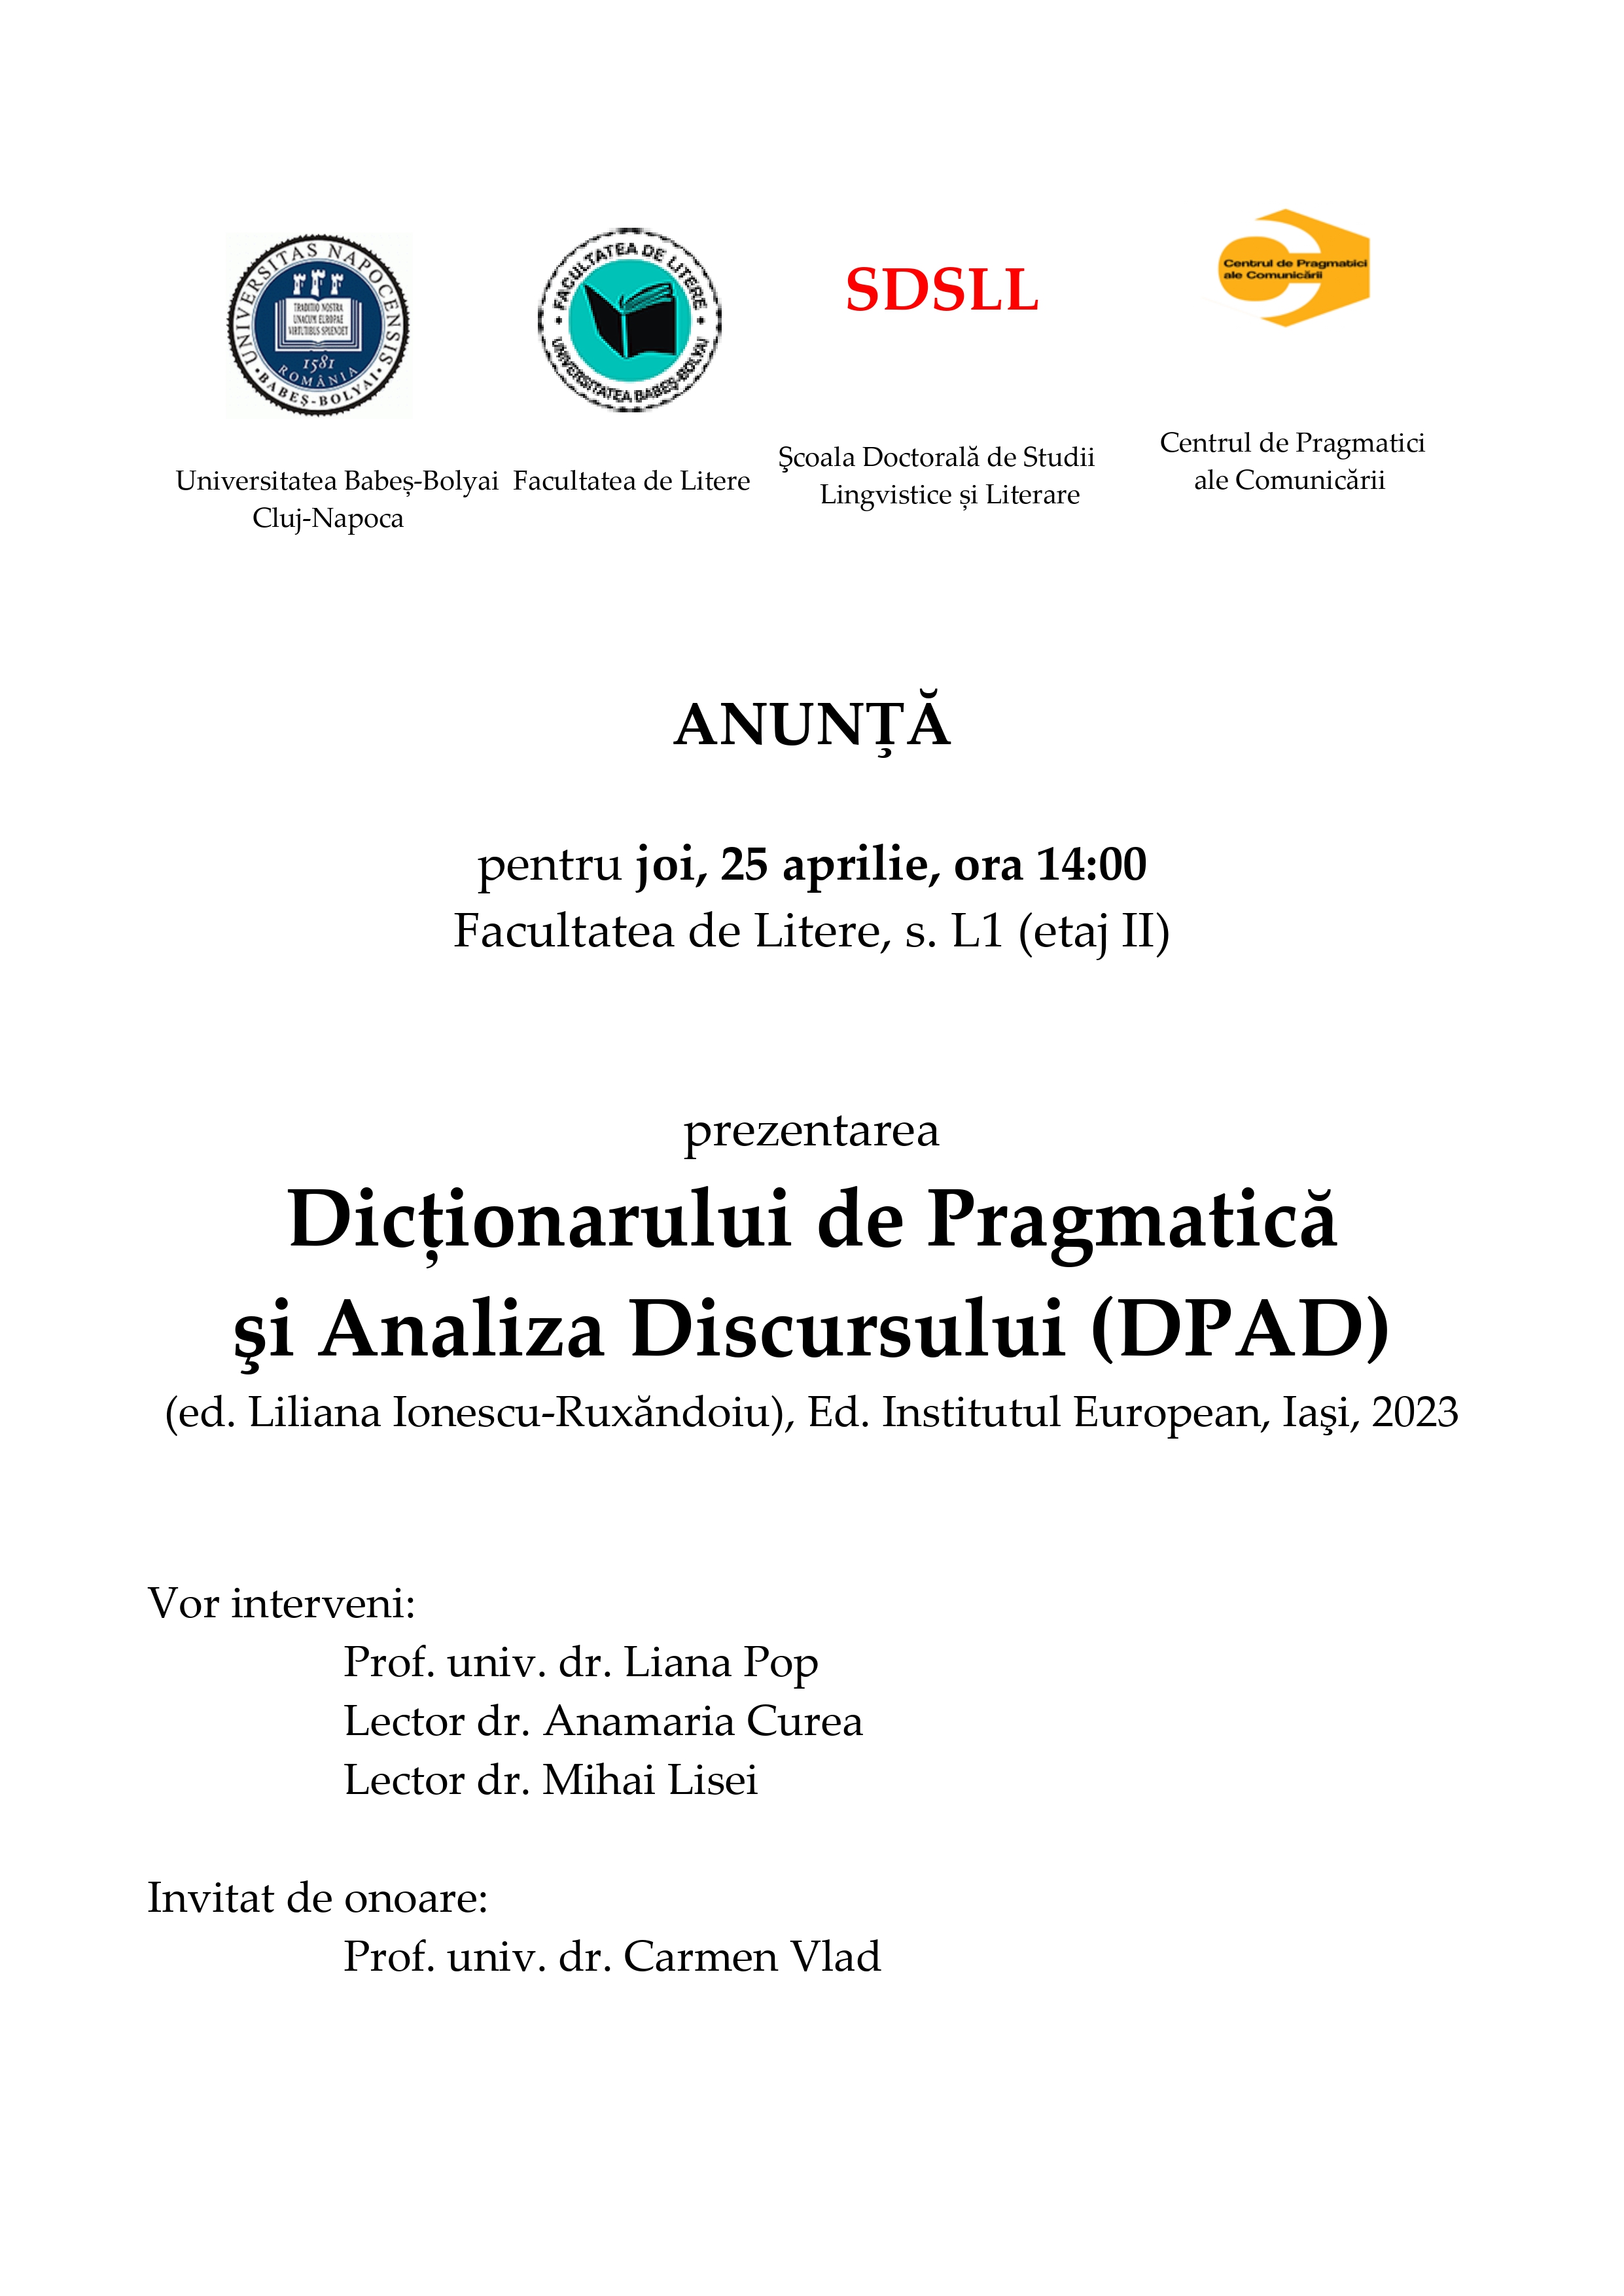 Prezentarea Dicționarului de Pragmatică şi Analiza Discursului (DPAD), 25 aprilie 2024, sala L1, ora 14:00